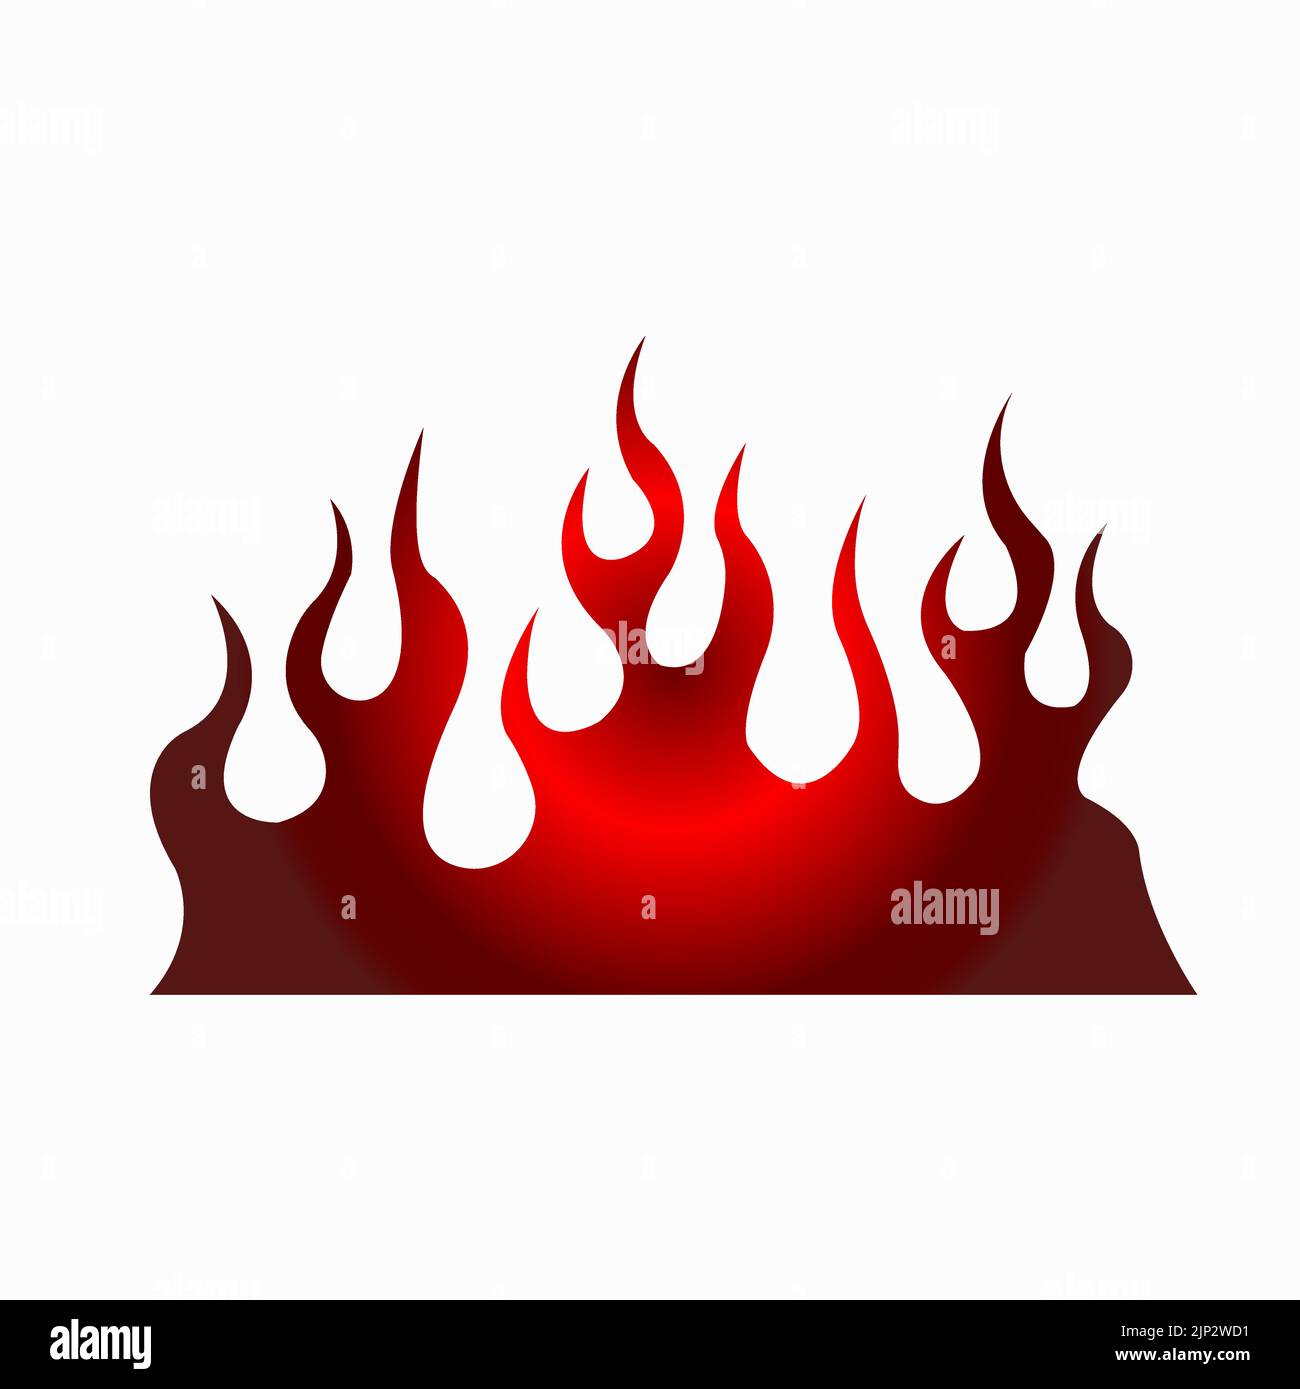 Brennende Feuerflamme, feuerfestes Schild isoliert Flamme Symbol. Vektor brennende feurige Explosion, orange Feuerball, lodernde Feuerverbrennung, Inferno-Zündung. Fl Stock Vektor